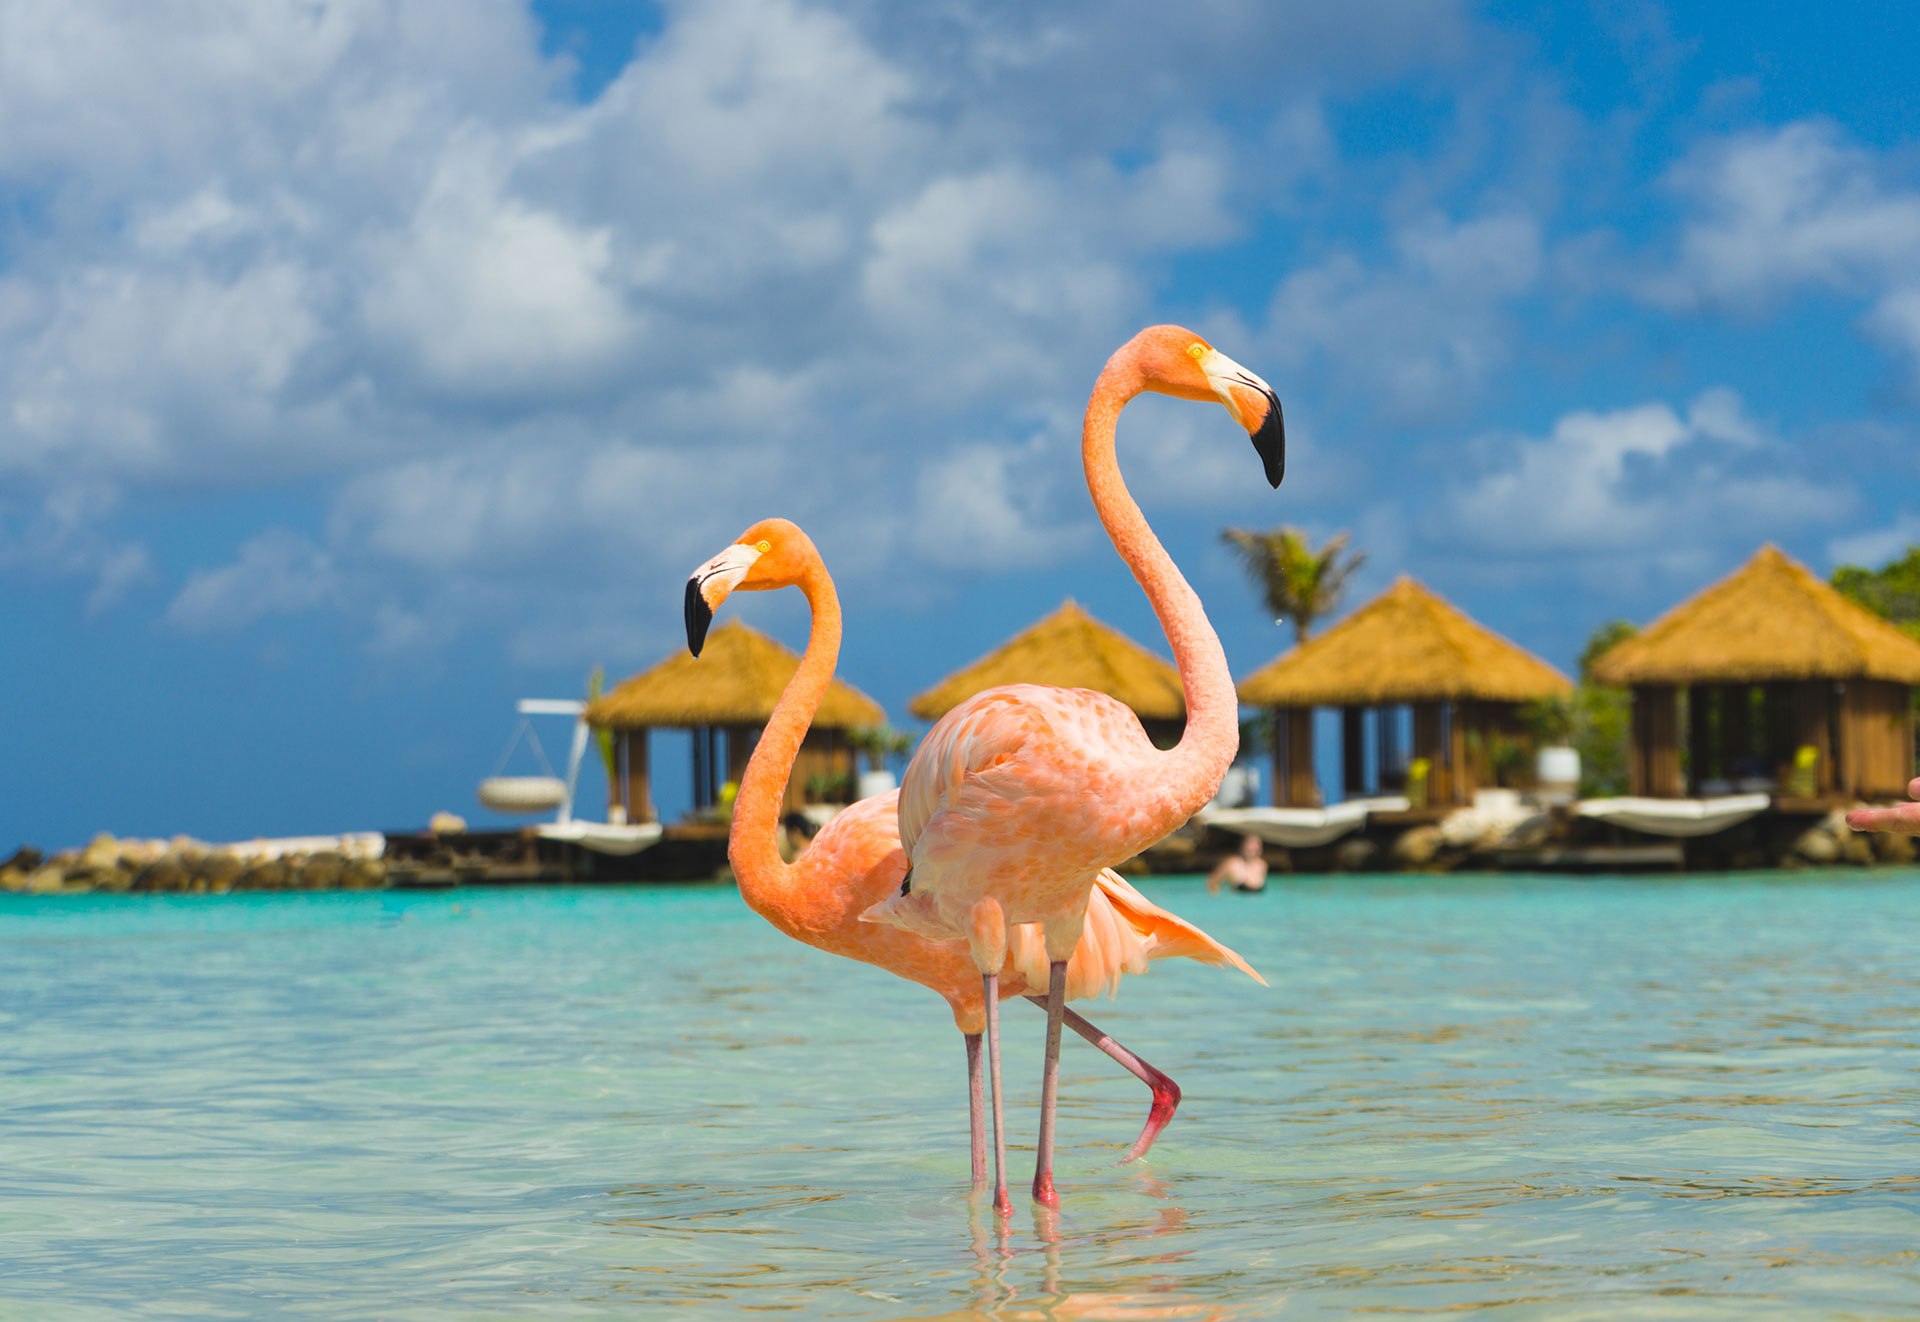 La isla Renaissance tiene las únicas playas privadas de Aruba y ahí se pueden ver los famosos flamencos rosados